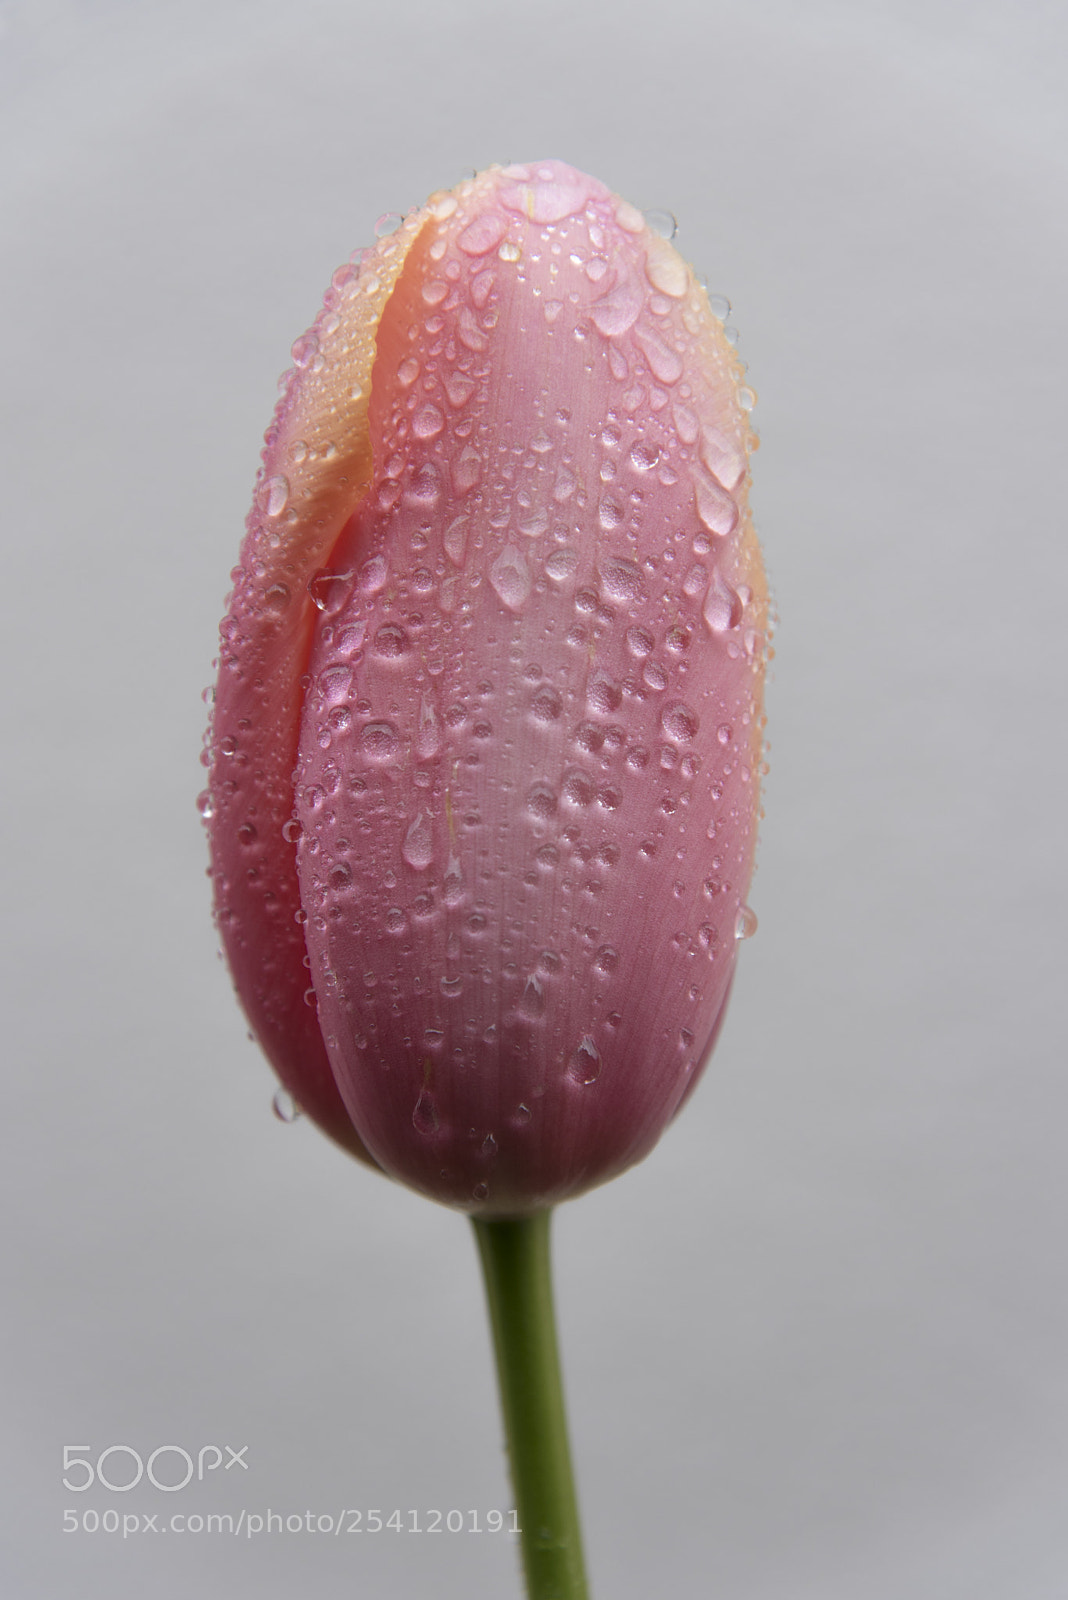 Nikon D750 sample photo. Pink tulip photography